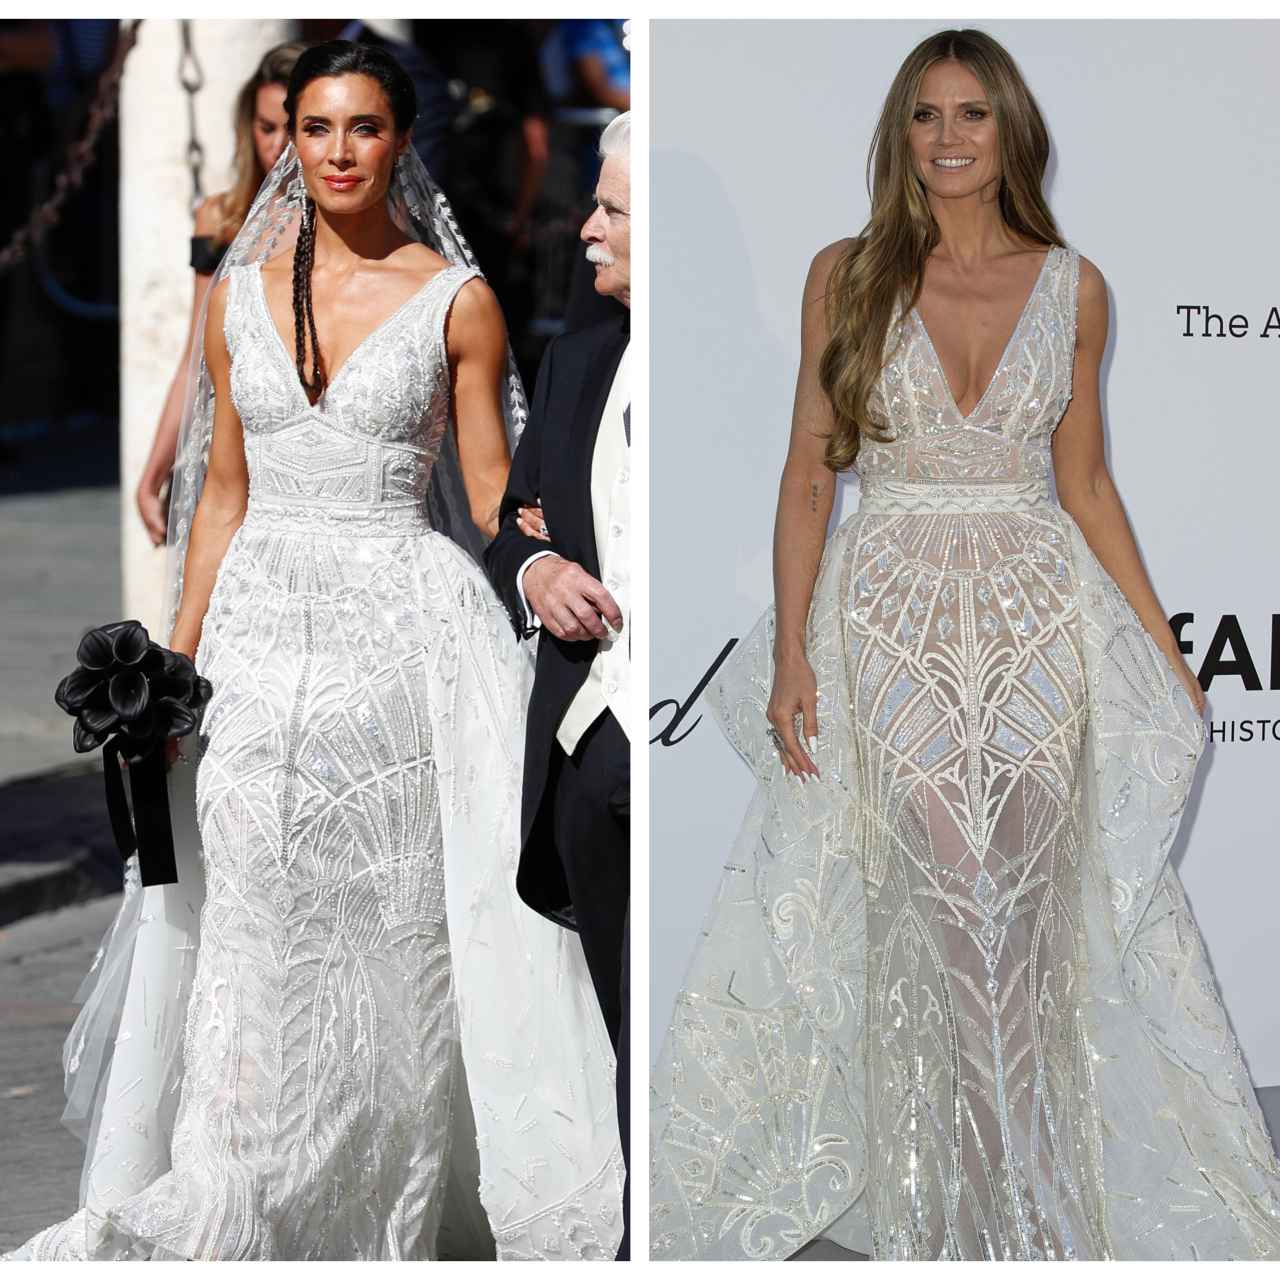 El vestido de novia de Pilar Rubio no es tan exclusivo: Heidi Klum lo lució  antes en una gala